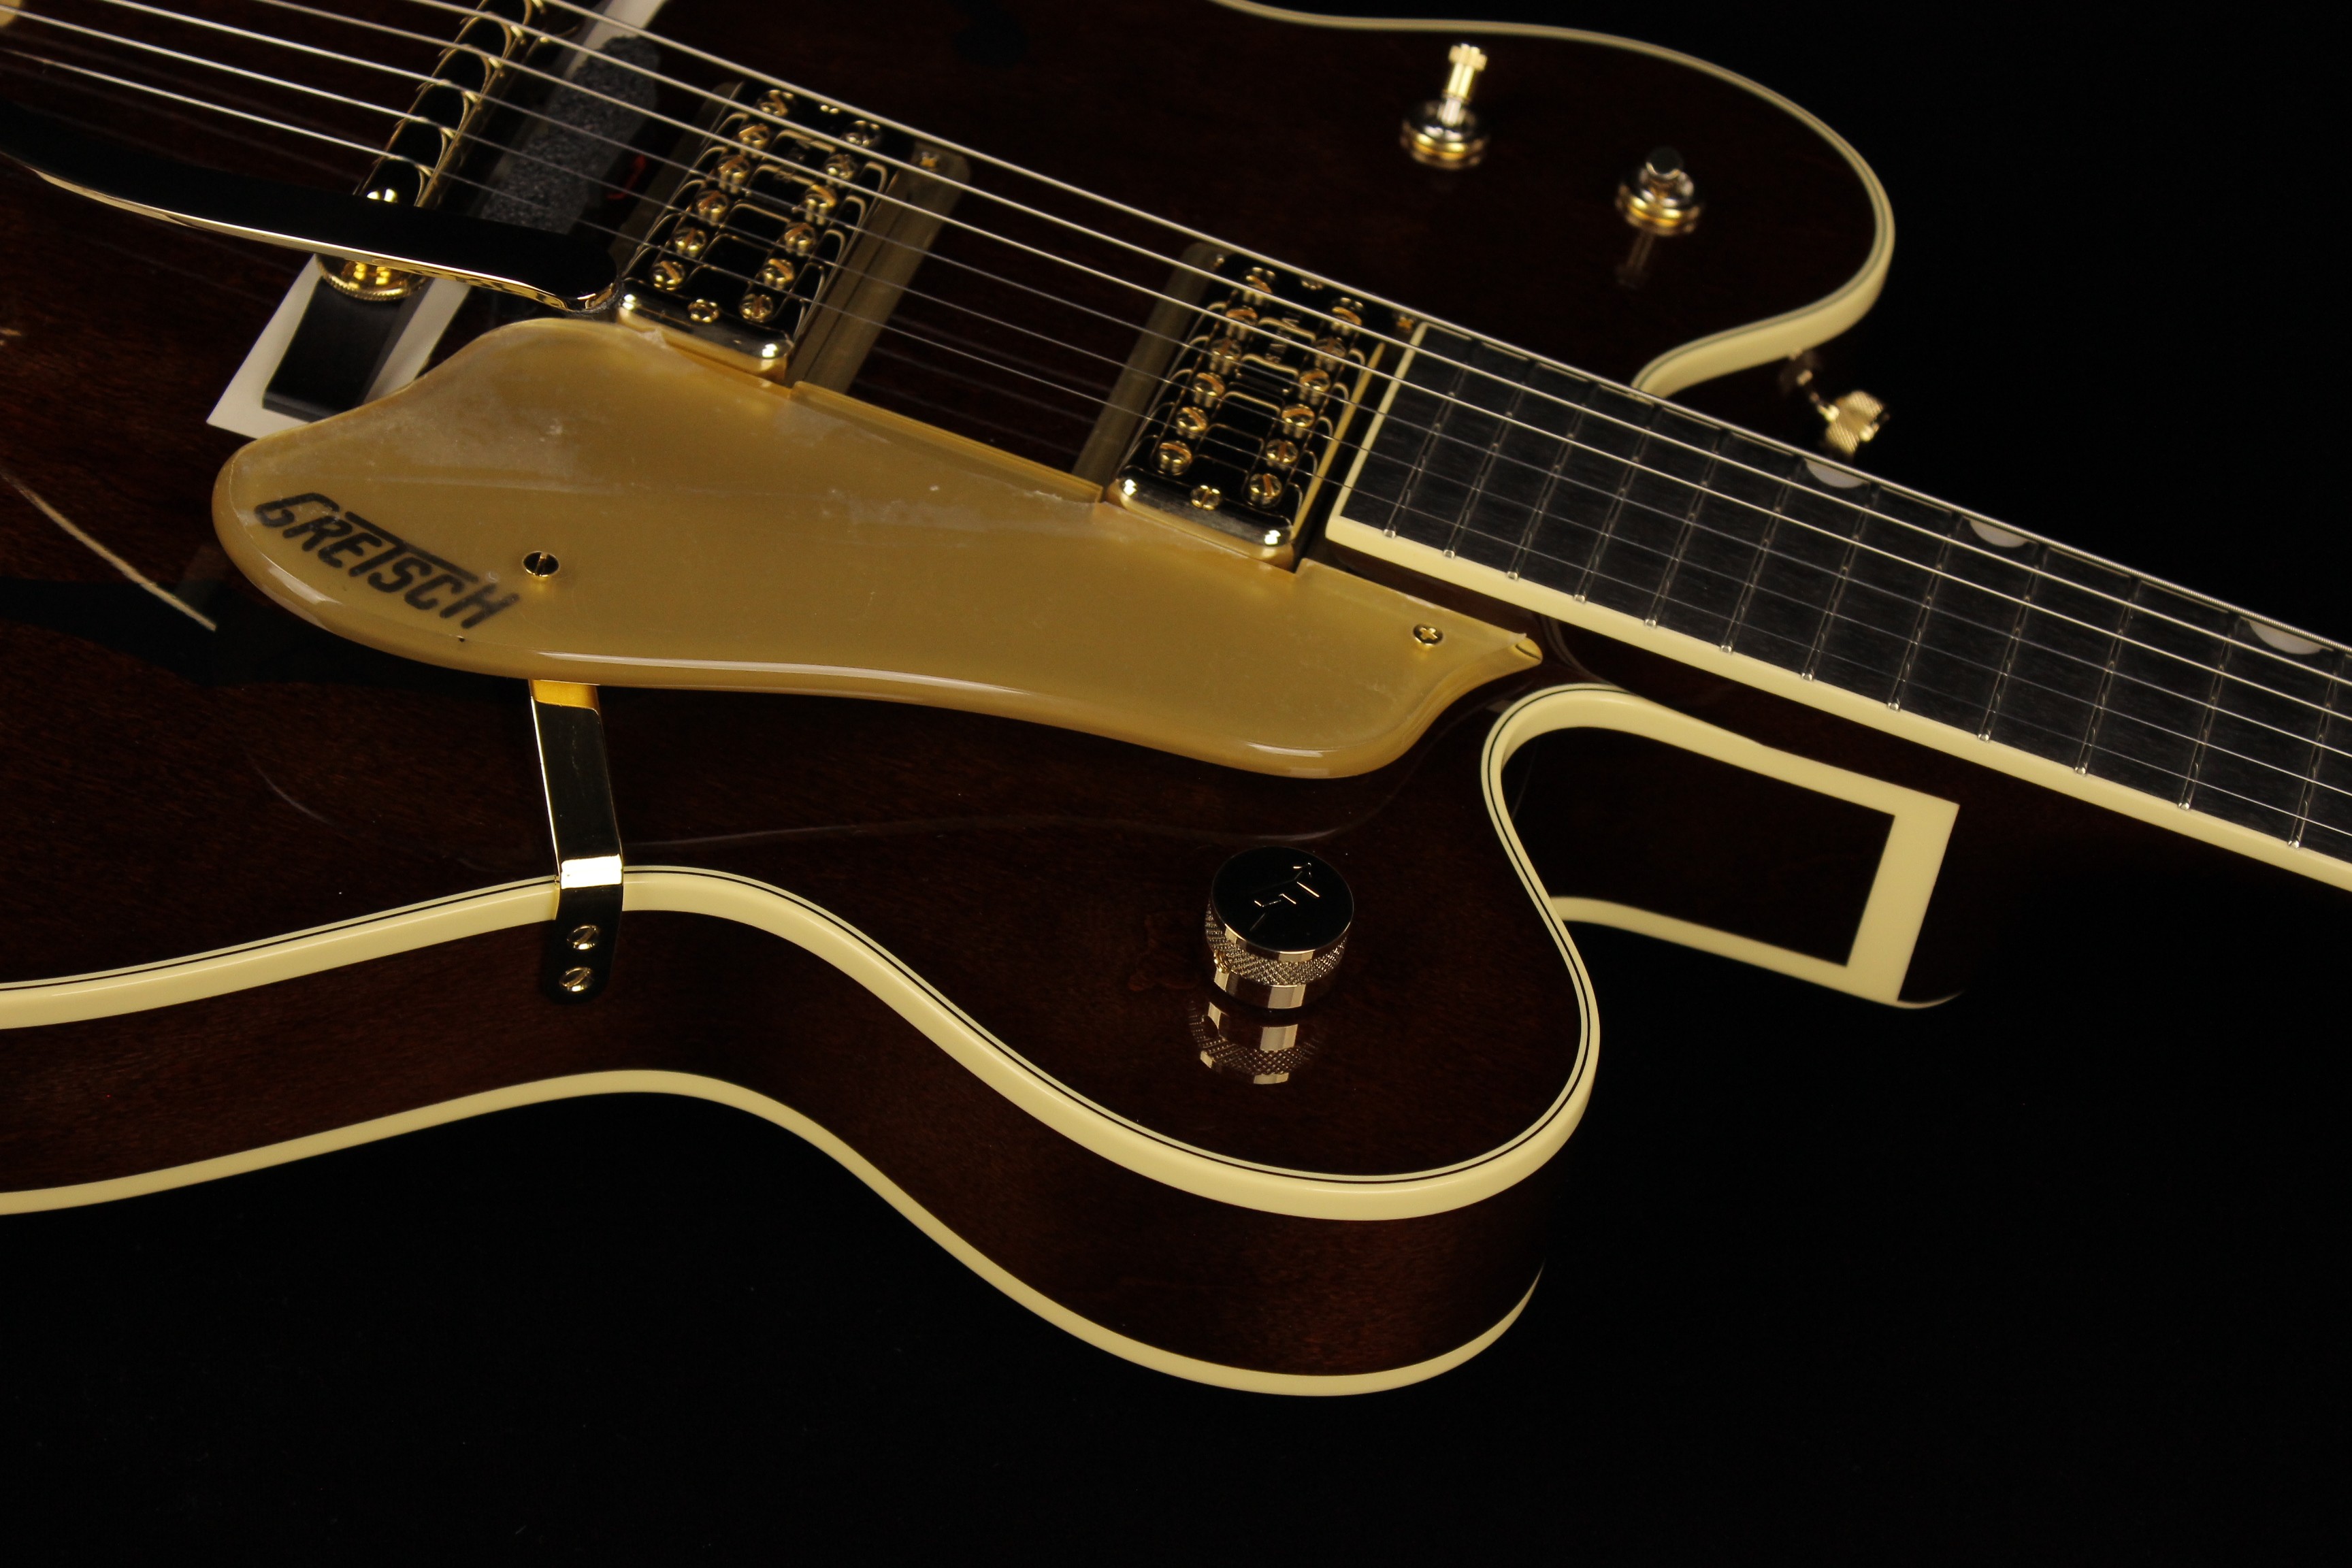 欲しいの Morris Hand Made Premium Series S-96III For Finger Picker 新品<br> モーリス  国産 Natural,ナチュラル ピックアップ搭載 Acoustic Guitar,アコースティックギター,Folk  Guitar,フォークギター,アコギ